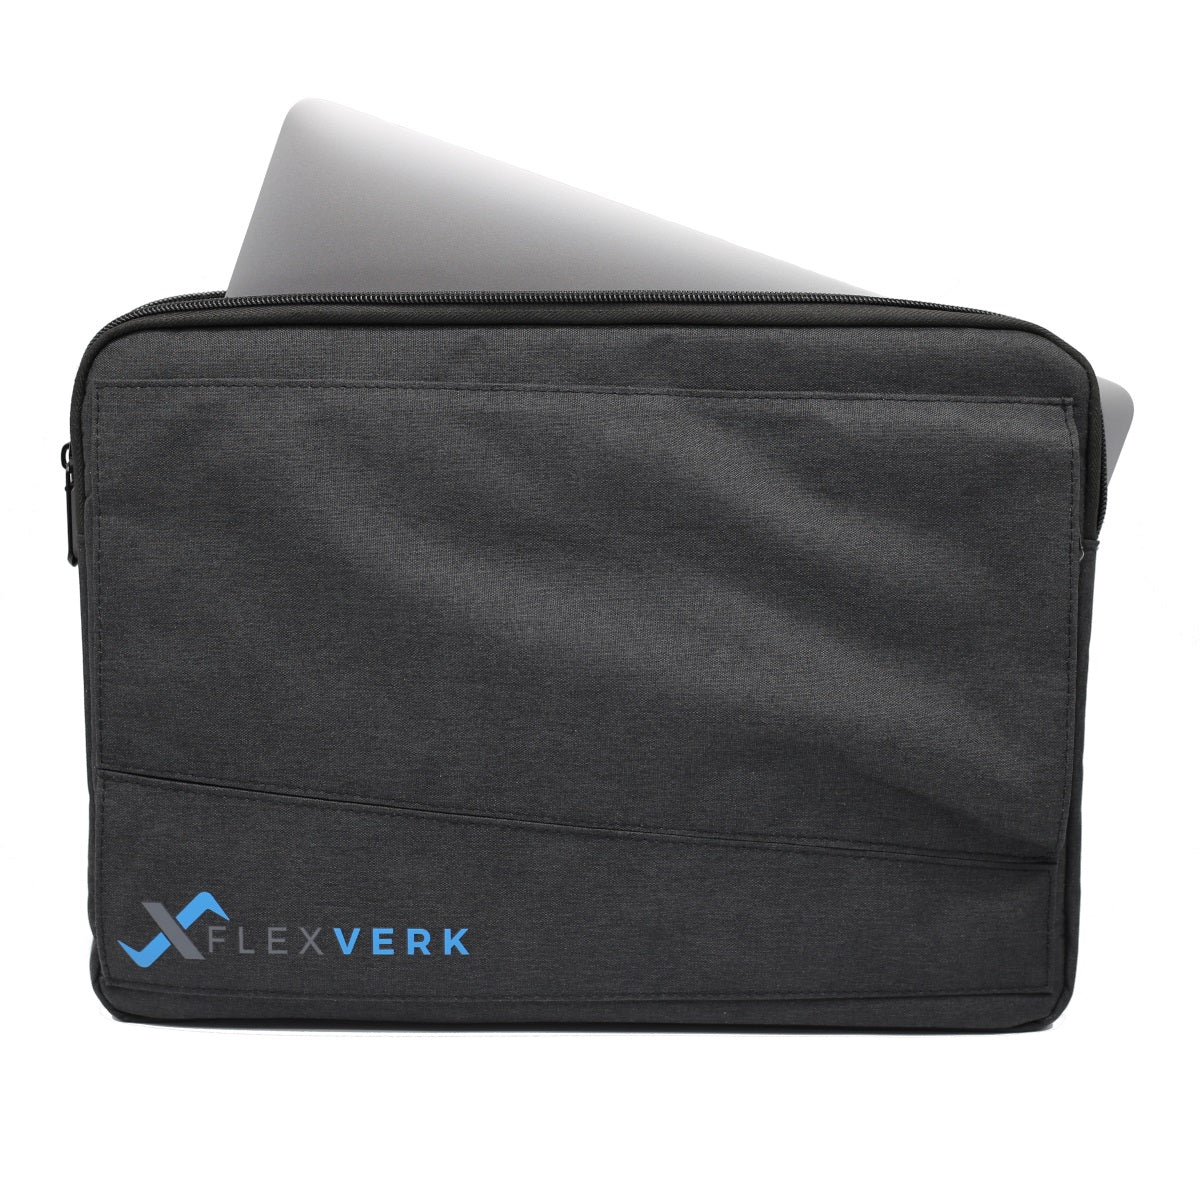 FlexVerk Laptop Sleeve